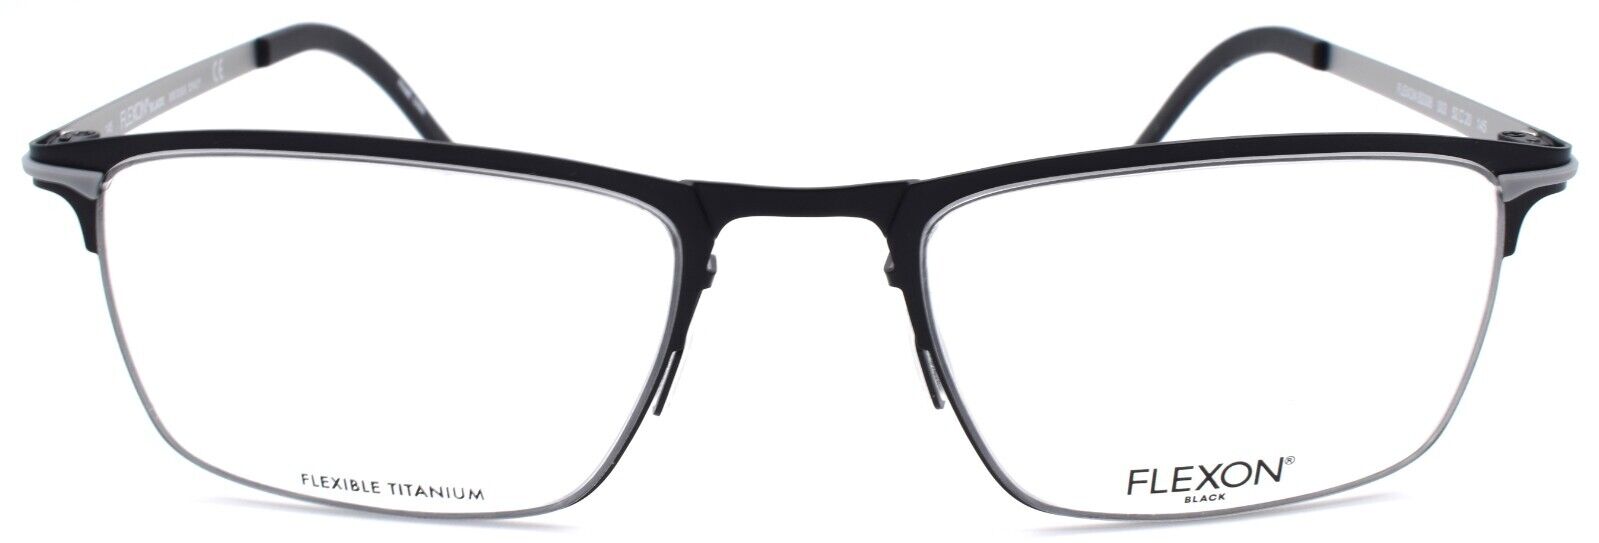 2-Flexon B2006 003 Men's Eyeglasses Black Palladium 52-20-145 Flexible Titanium-883900206594-IKSpecs